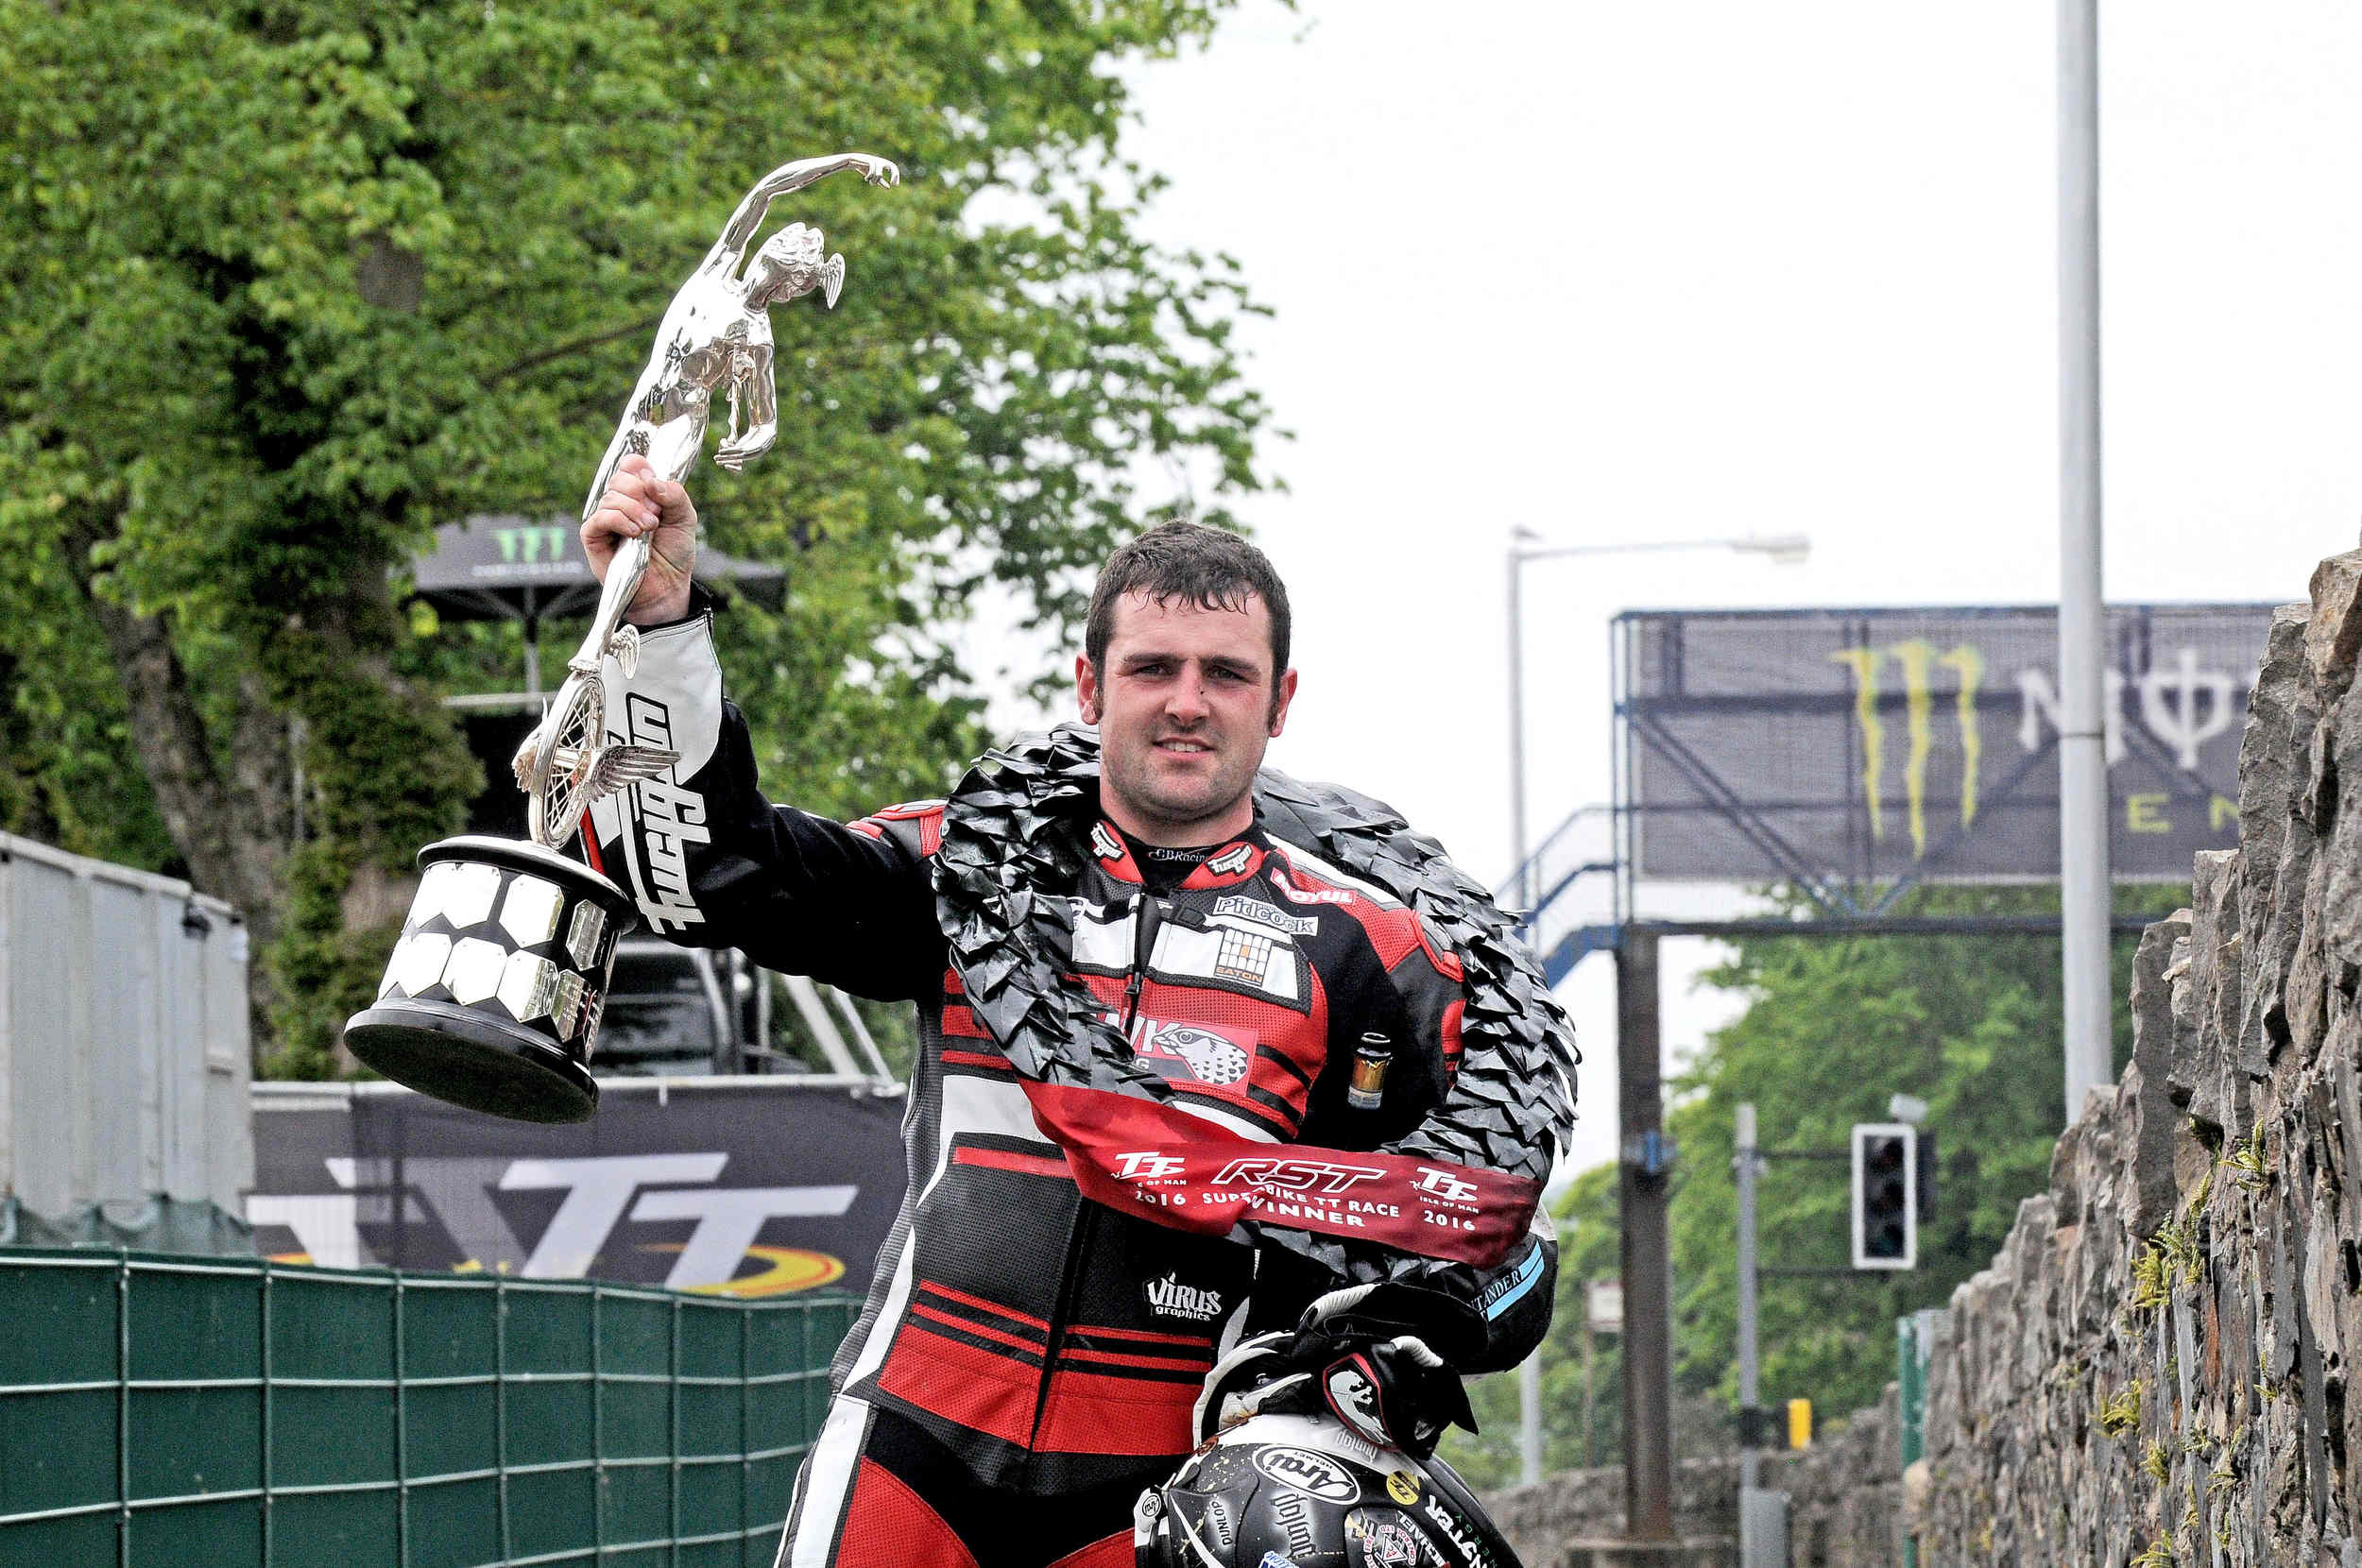  Superbike TT 2016 winner Michael Dunlop 